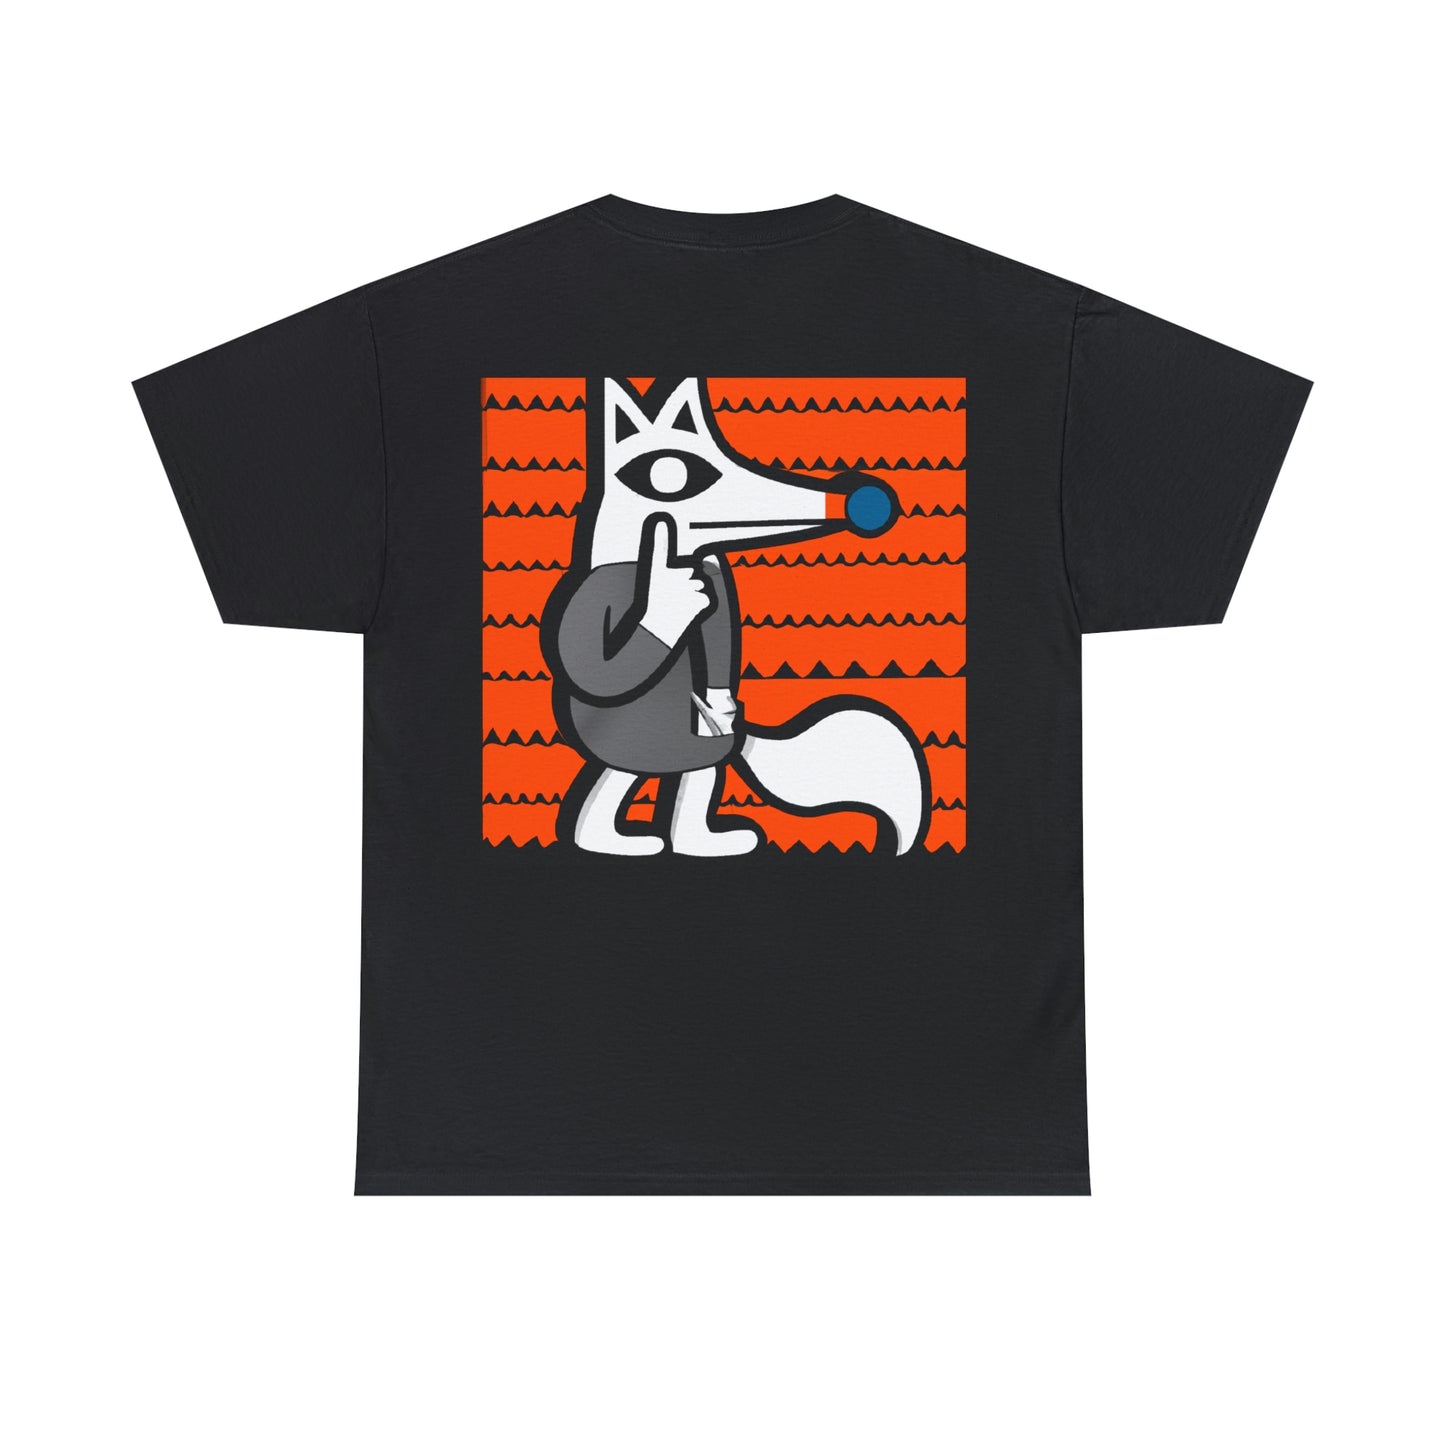 Das gestohlene Geheimnis des Fuchses – Das Alien-T-Shirt